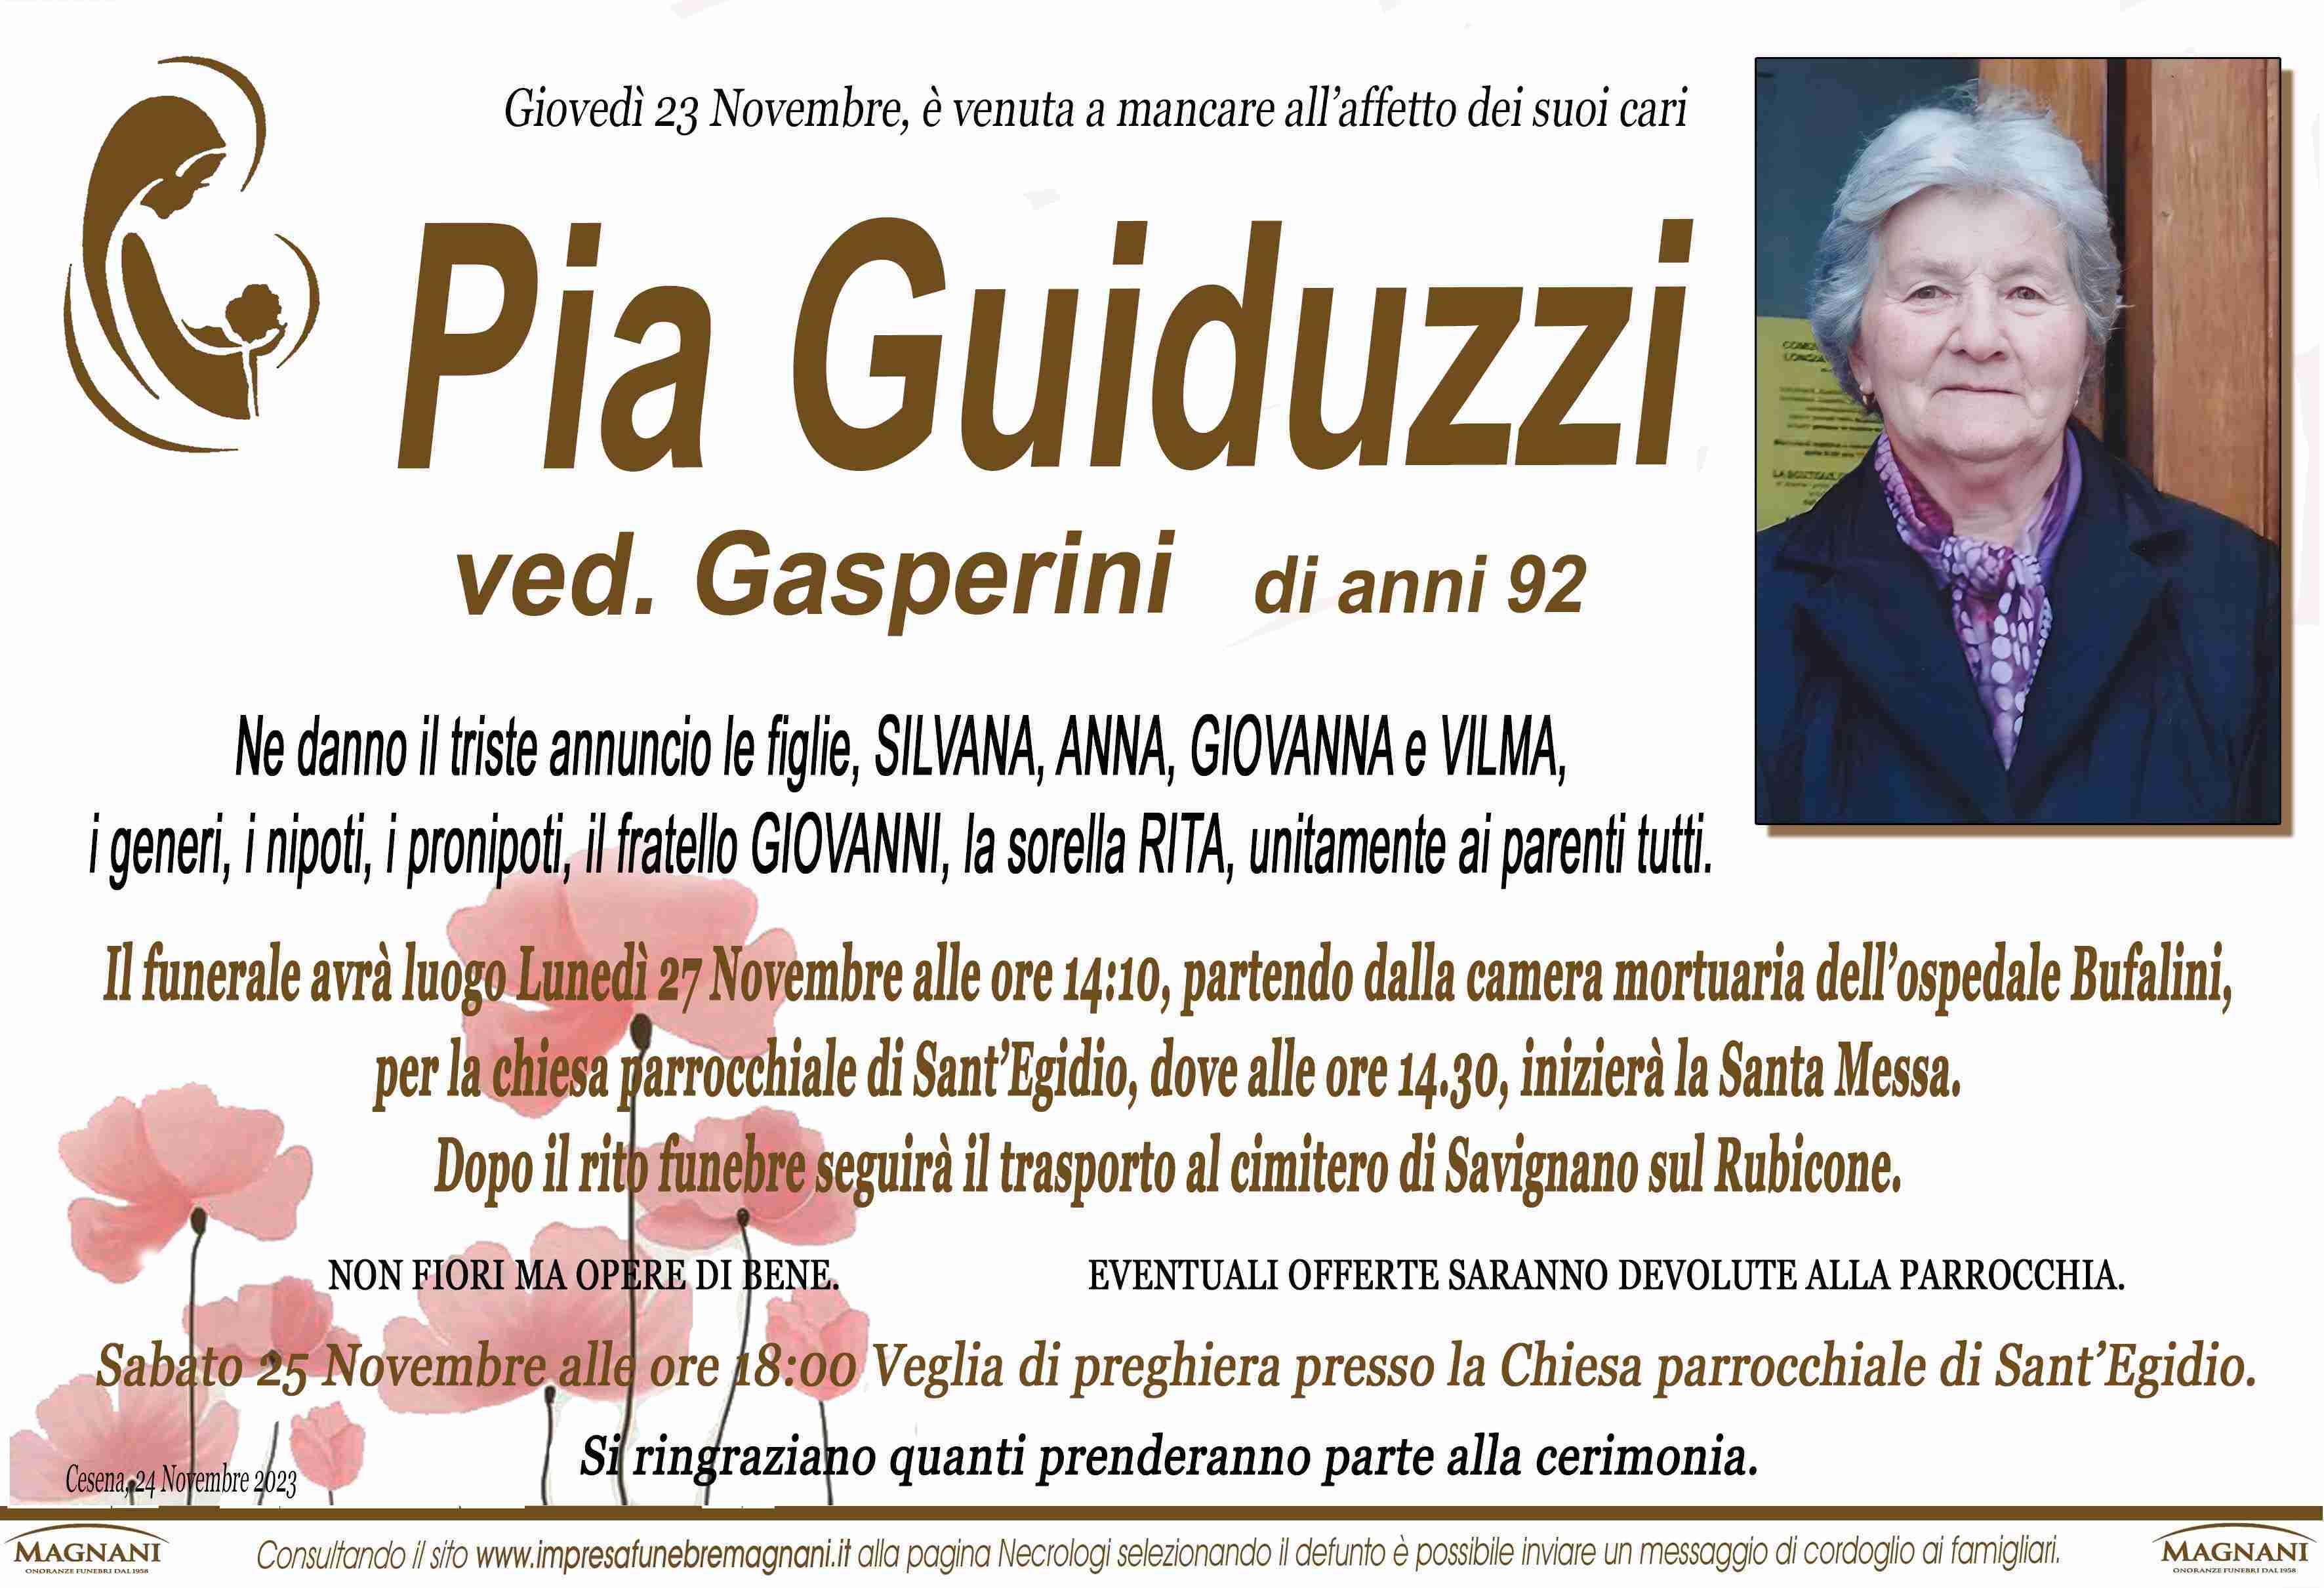 Pia Guiduzzi